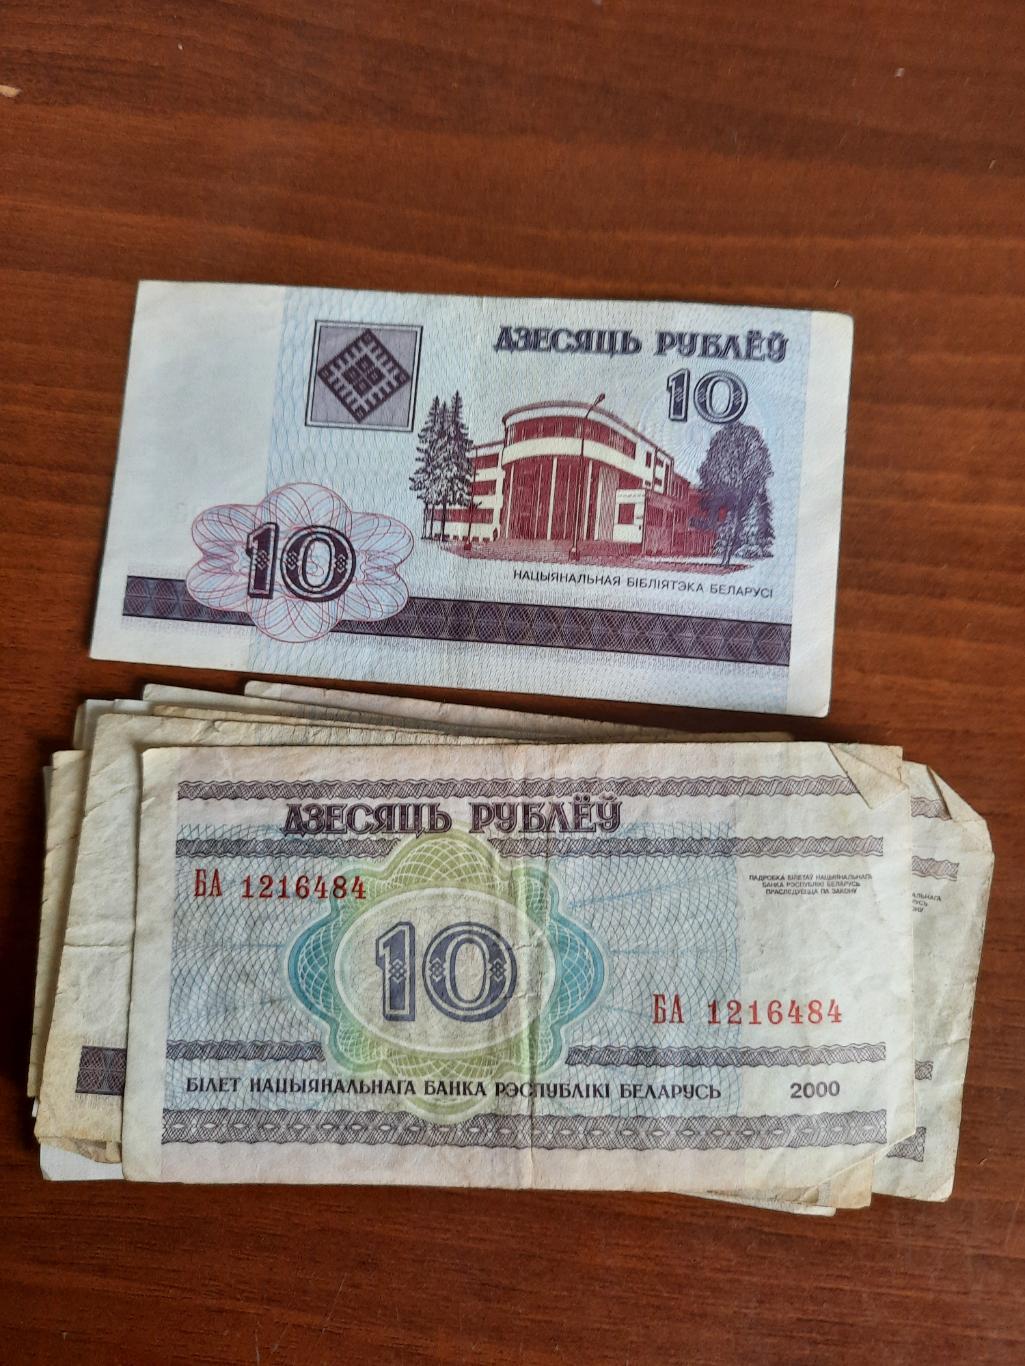 Беларусь. 10 рублей 2000 год (одна купюра) серия ба